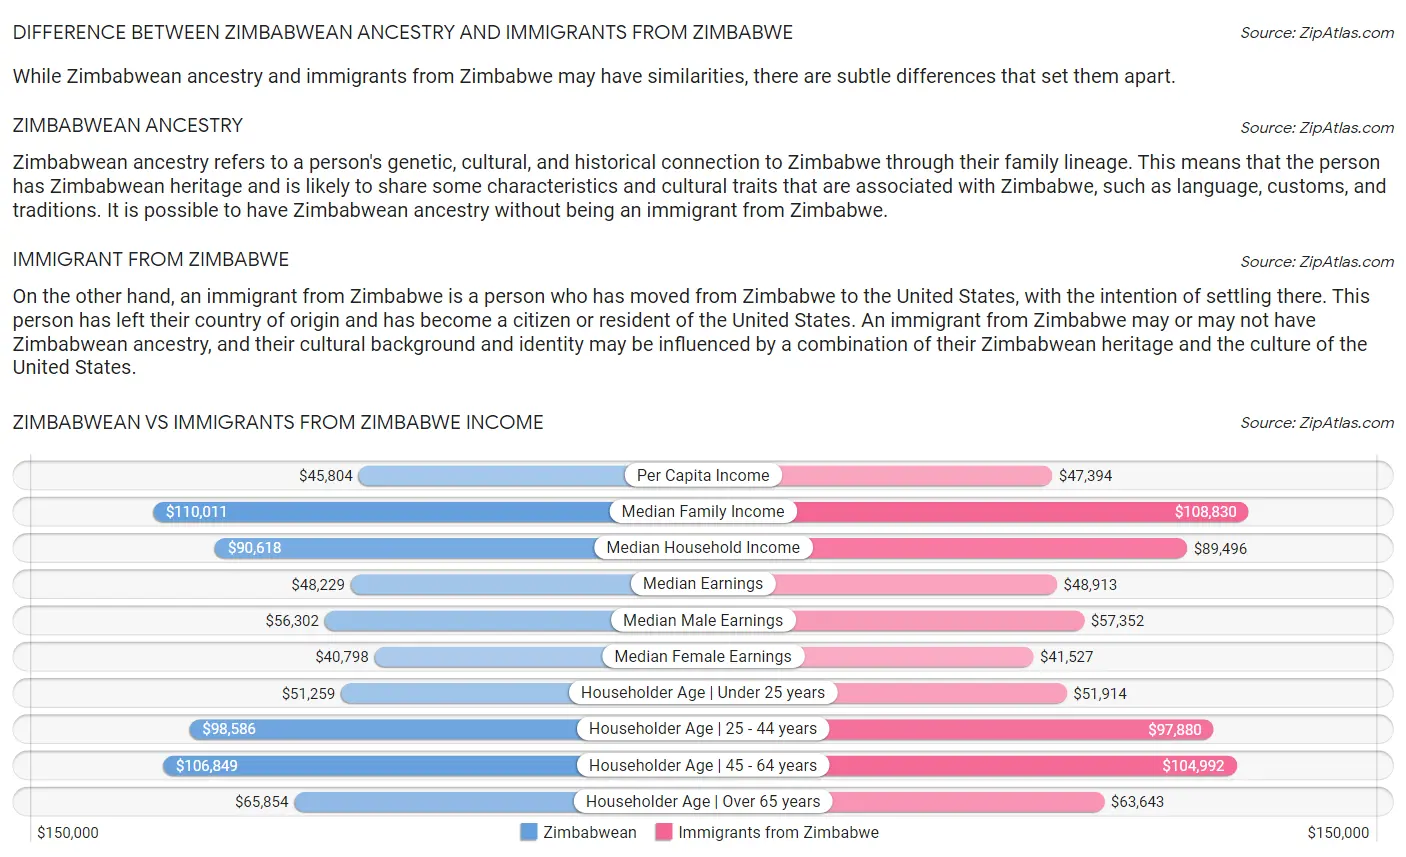 Zimbabwean vs Immigrants from Zimbabwe Income